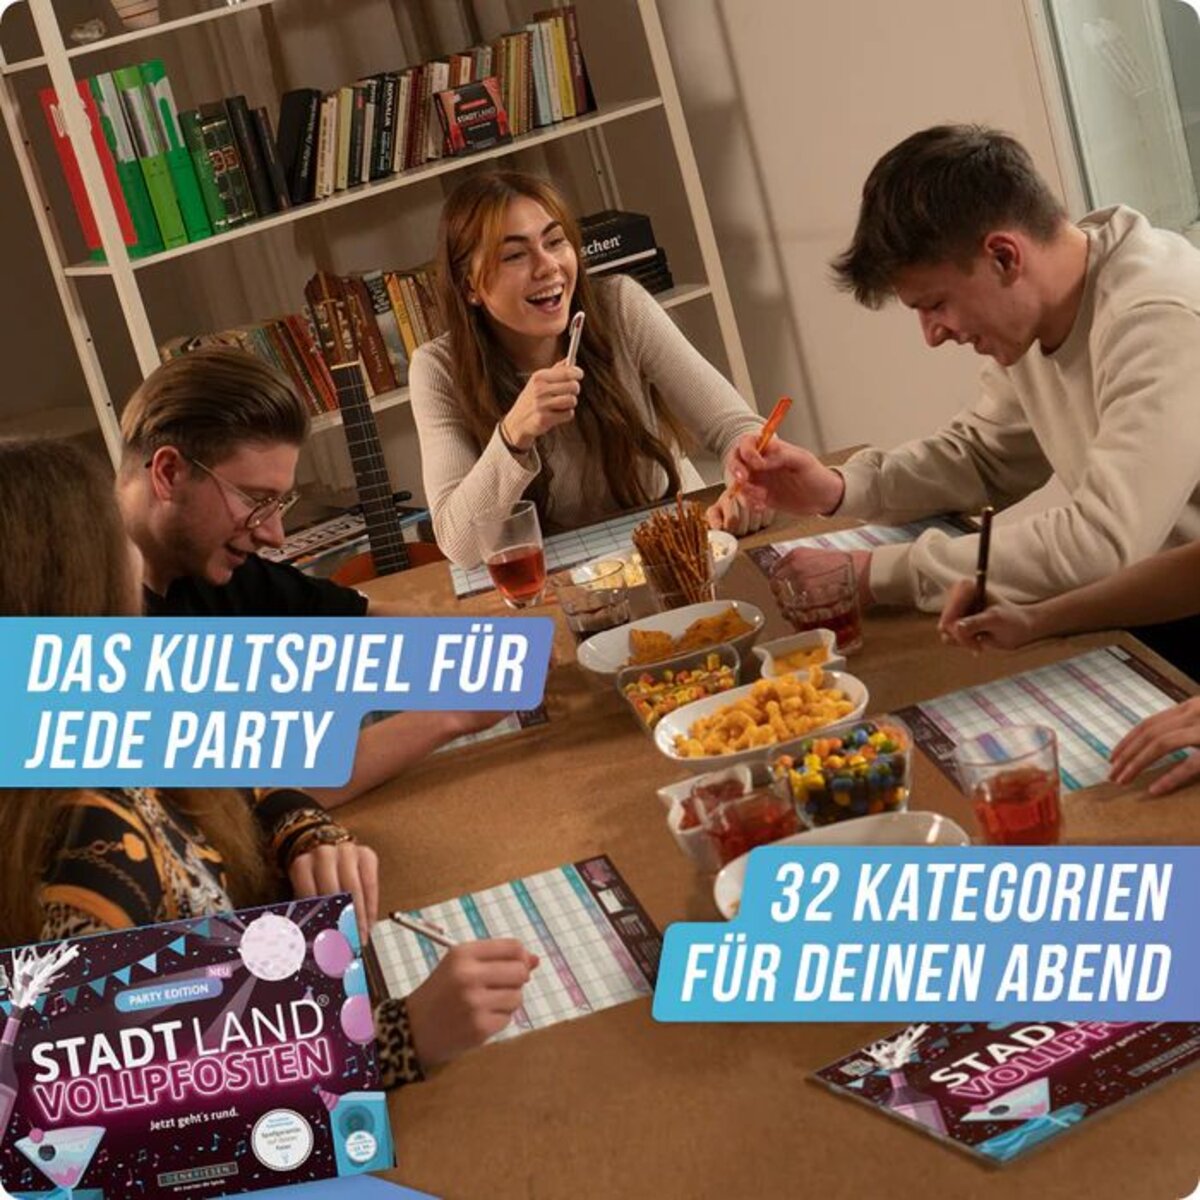 Denkriesen Stadt Land Vollpfosten - Party Edition "Jetzt geht's Rund"